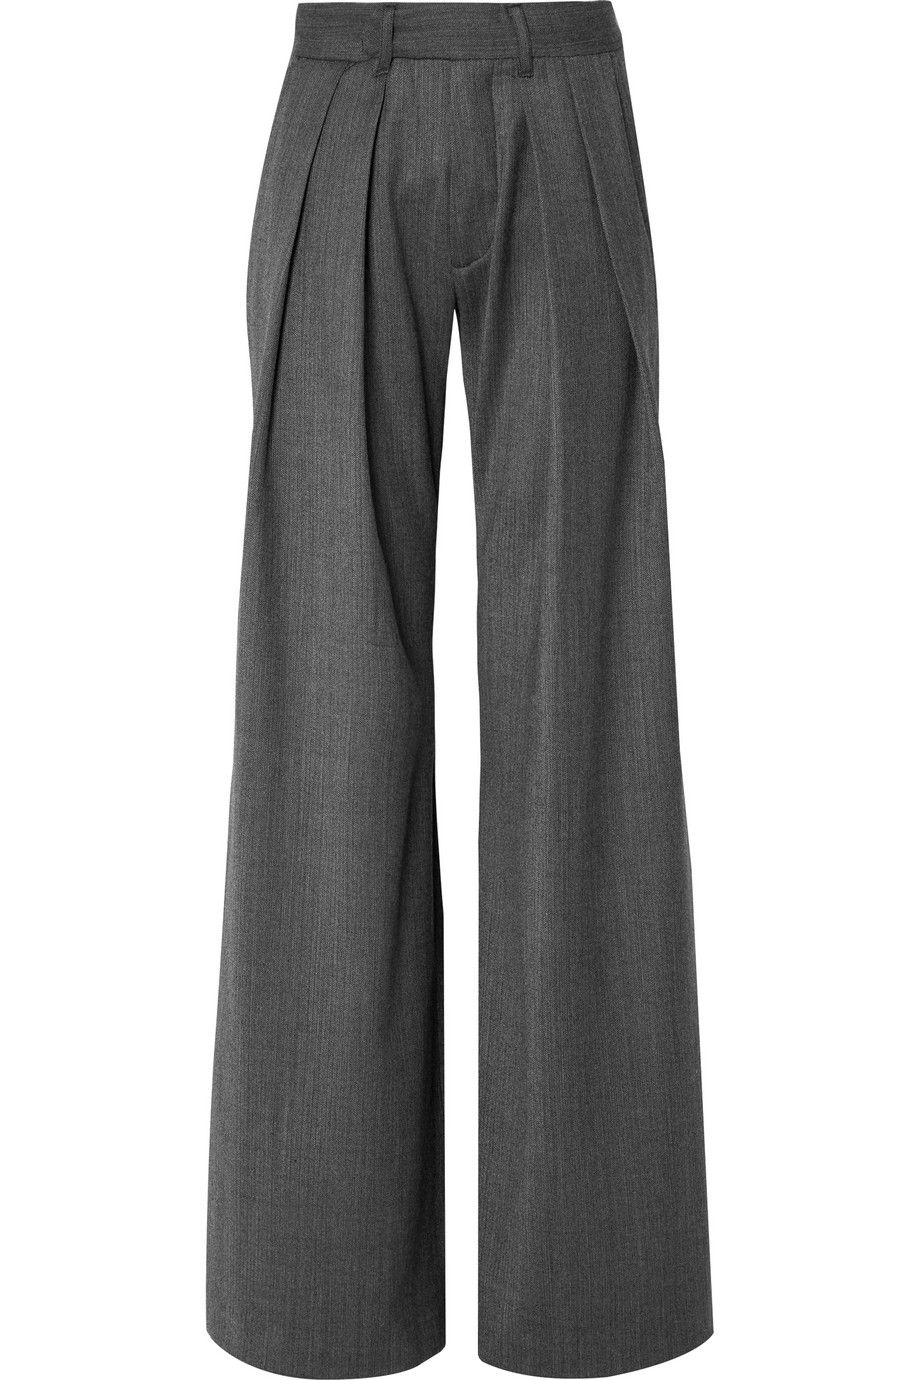 Best Pants on Sale-Pants for Under $500